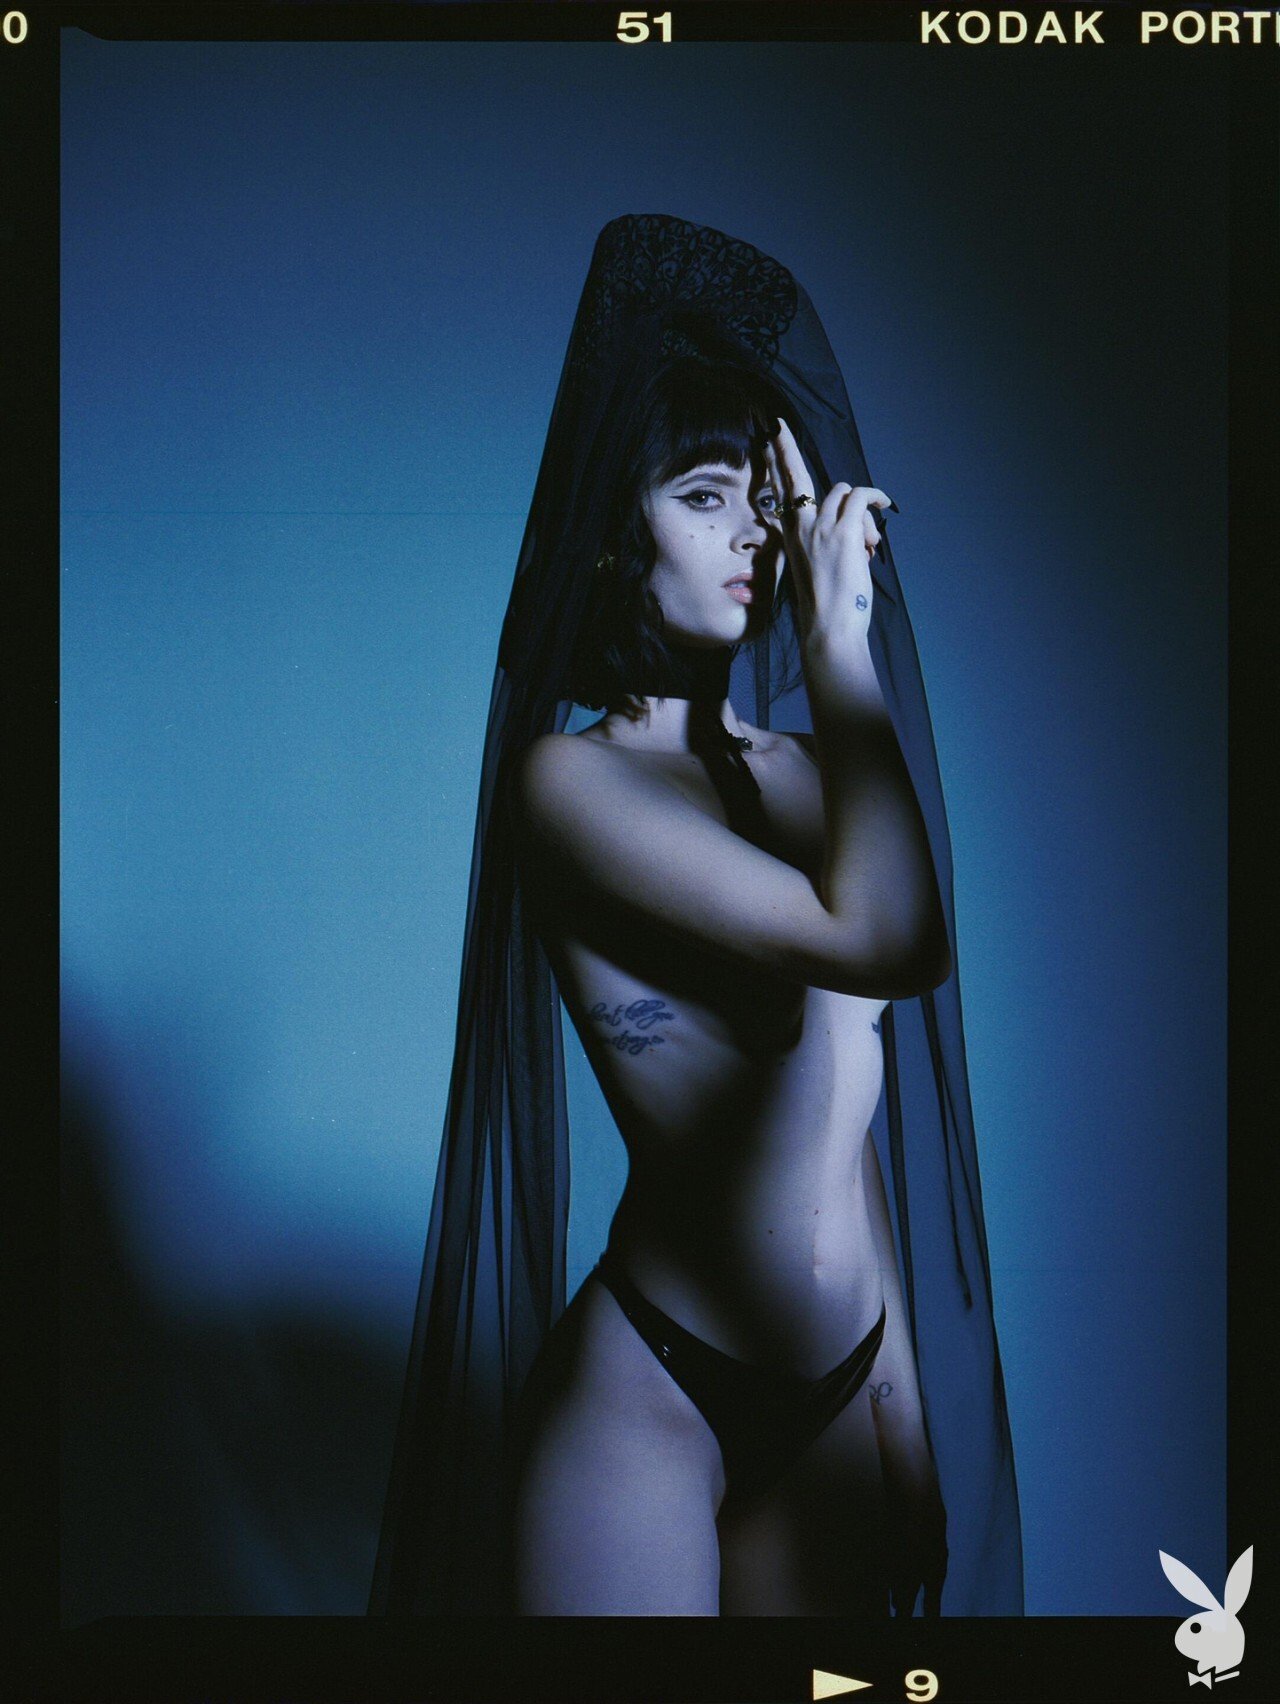 Carolina Ballesteros Nude - Playboy (38 Photos)